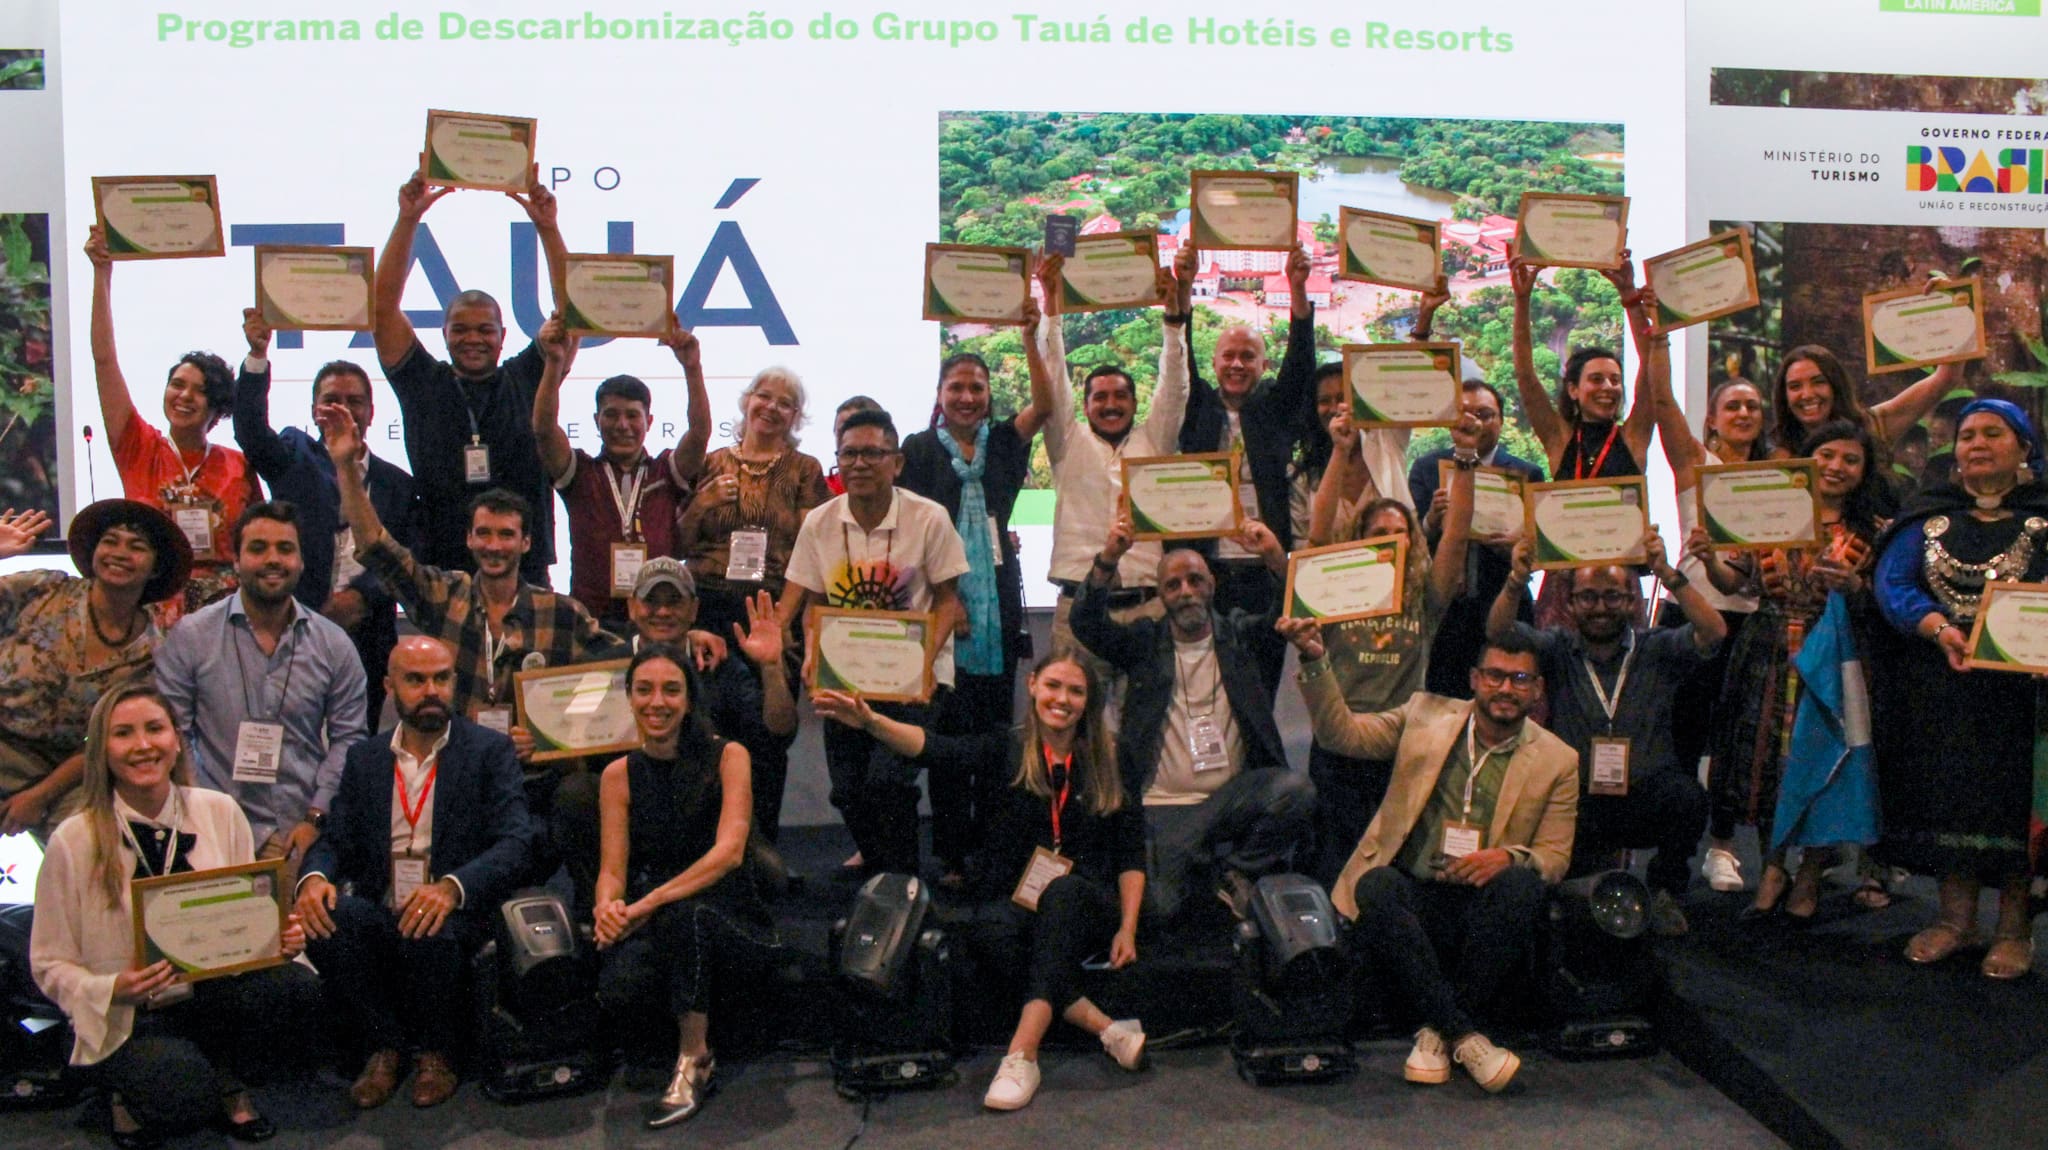 Vencedores do prêmio "Turismo Responsável" da WTM posam junto com autoridades após serem agraciados (Foto: Felipe Maresca / DT)